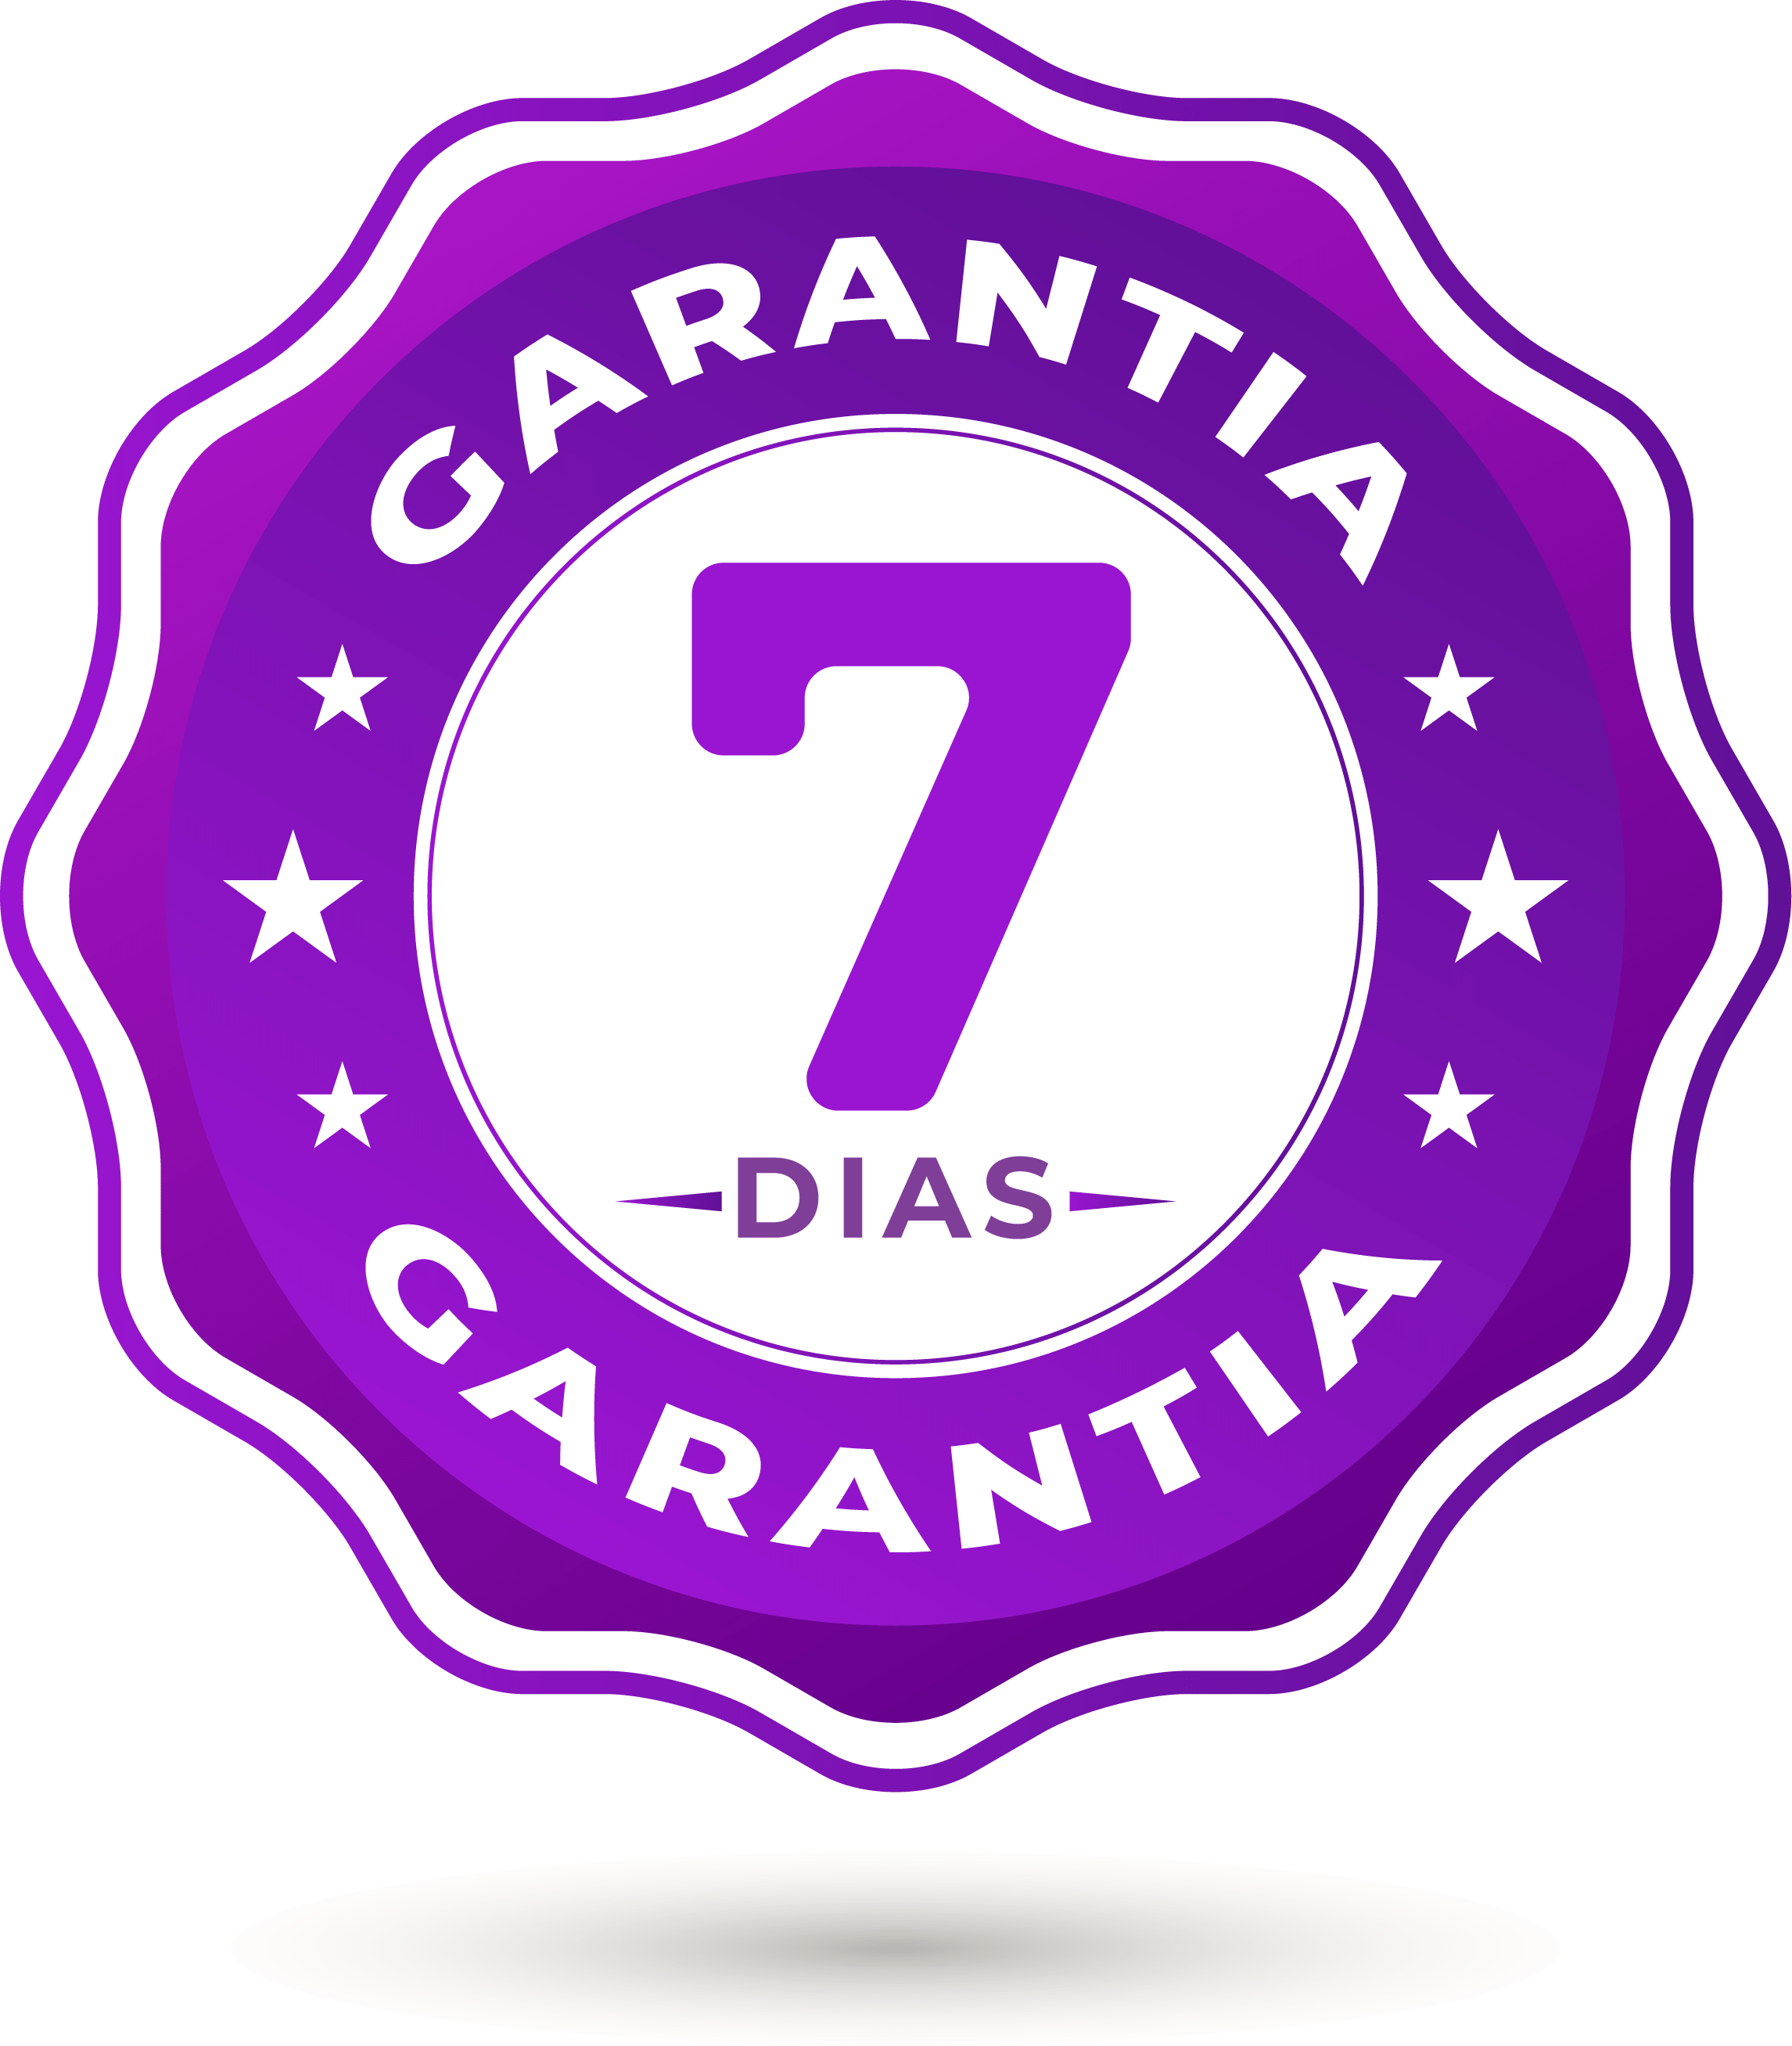 7 DIAS DE GARANTIA CURSO EDU min 1 - teste